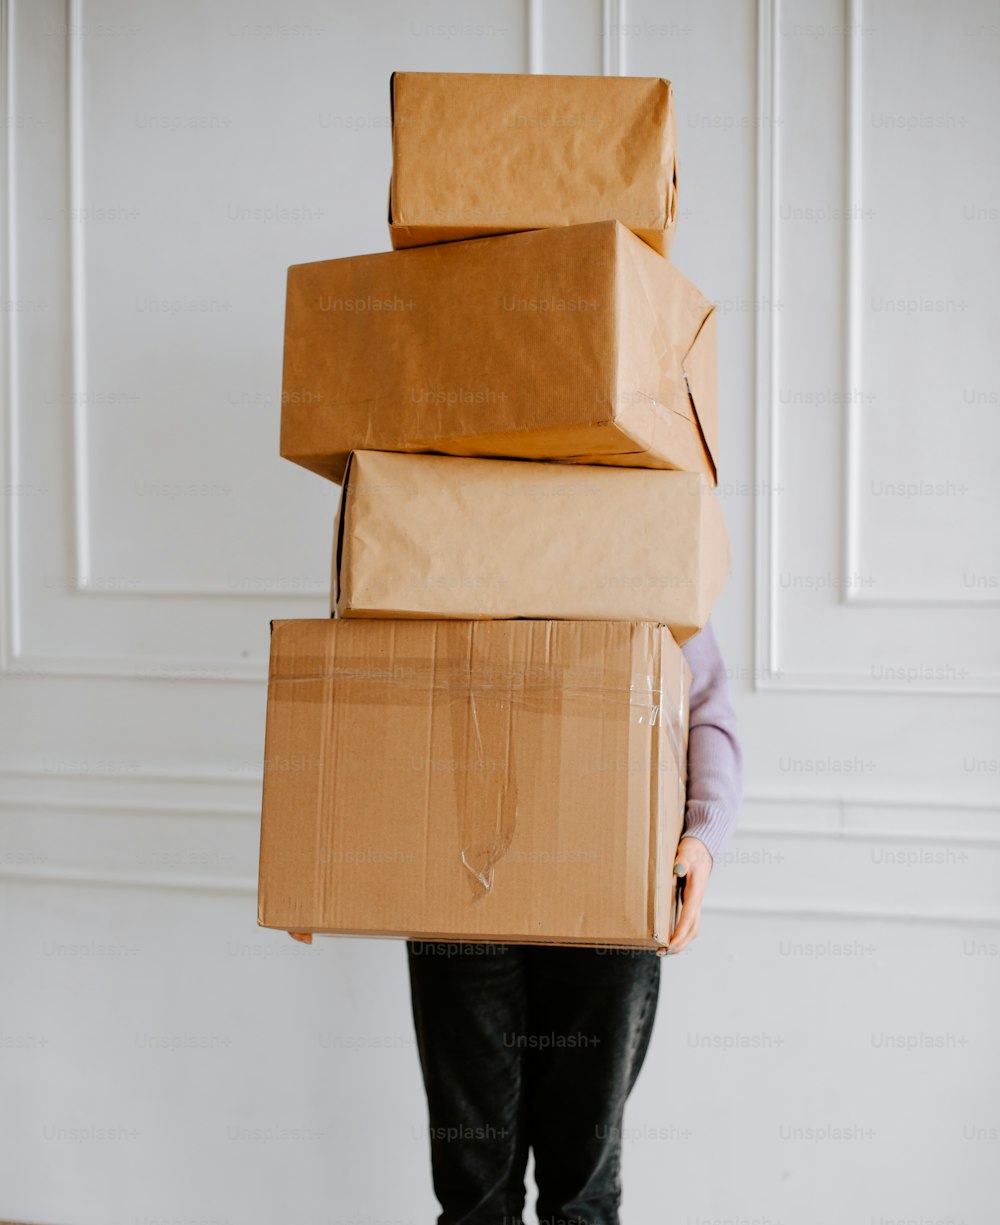 Una persona sosteniendo una pila de cajas marrones